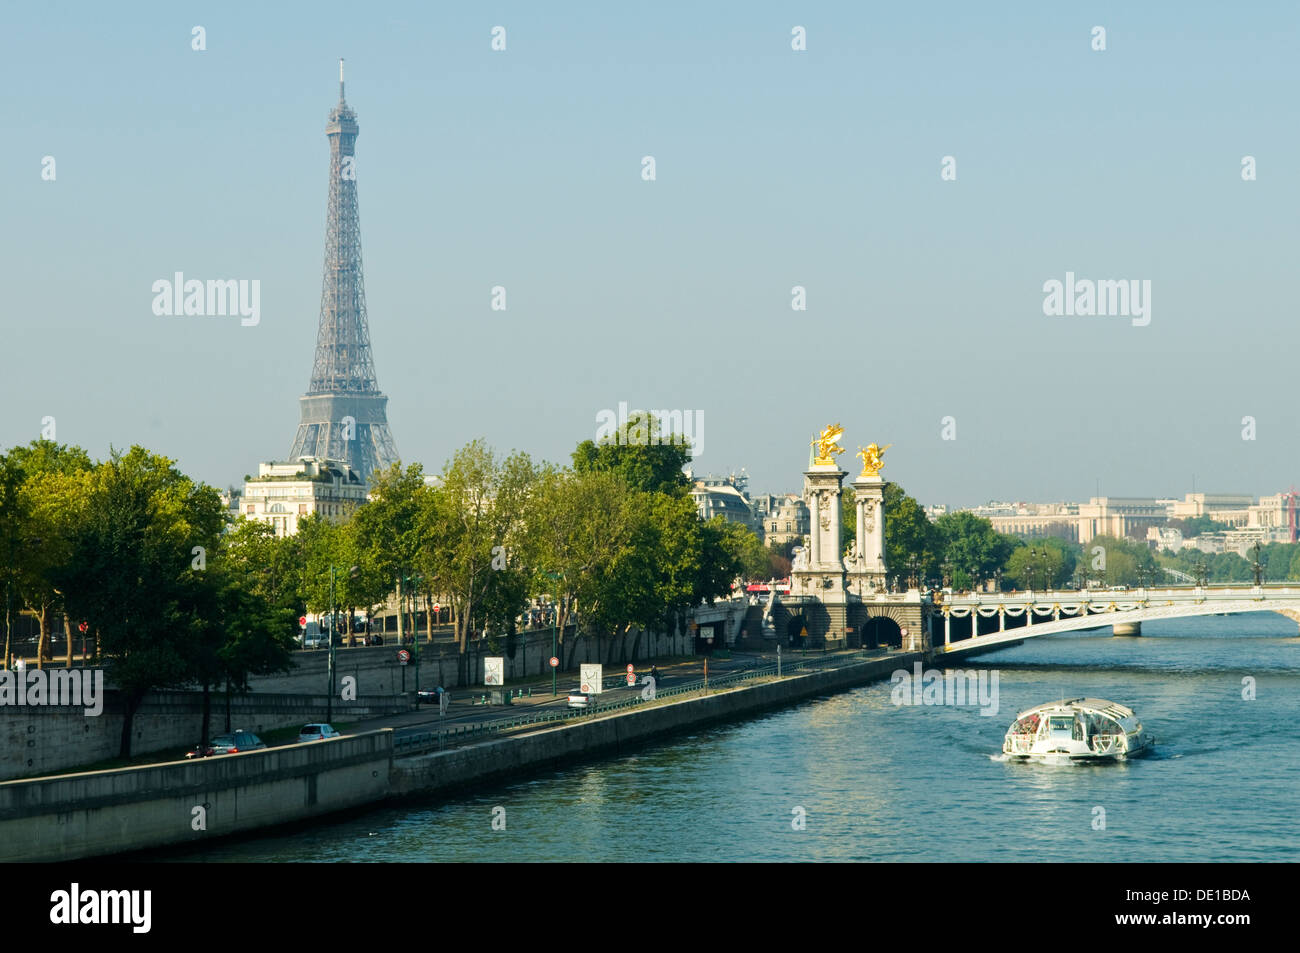 La Tour Eiffel et de la Seine, Paris, France Banque D'Images